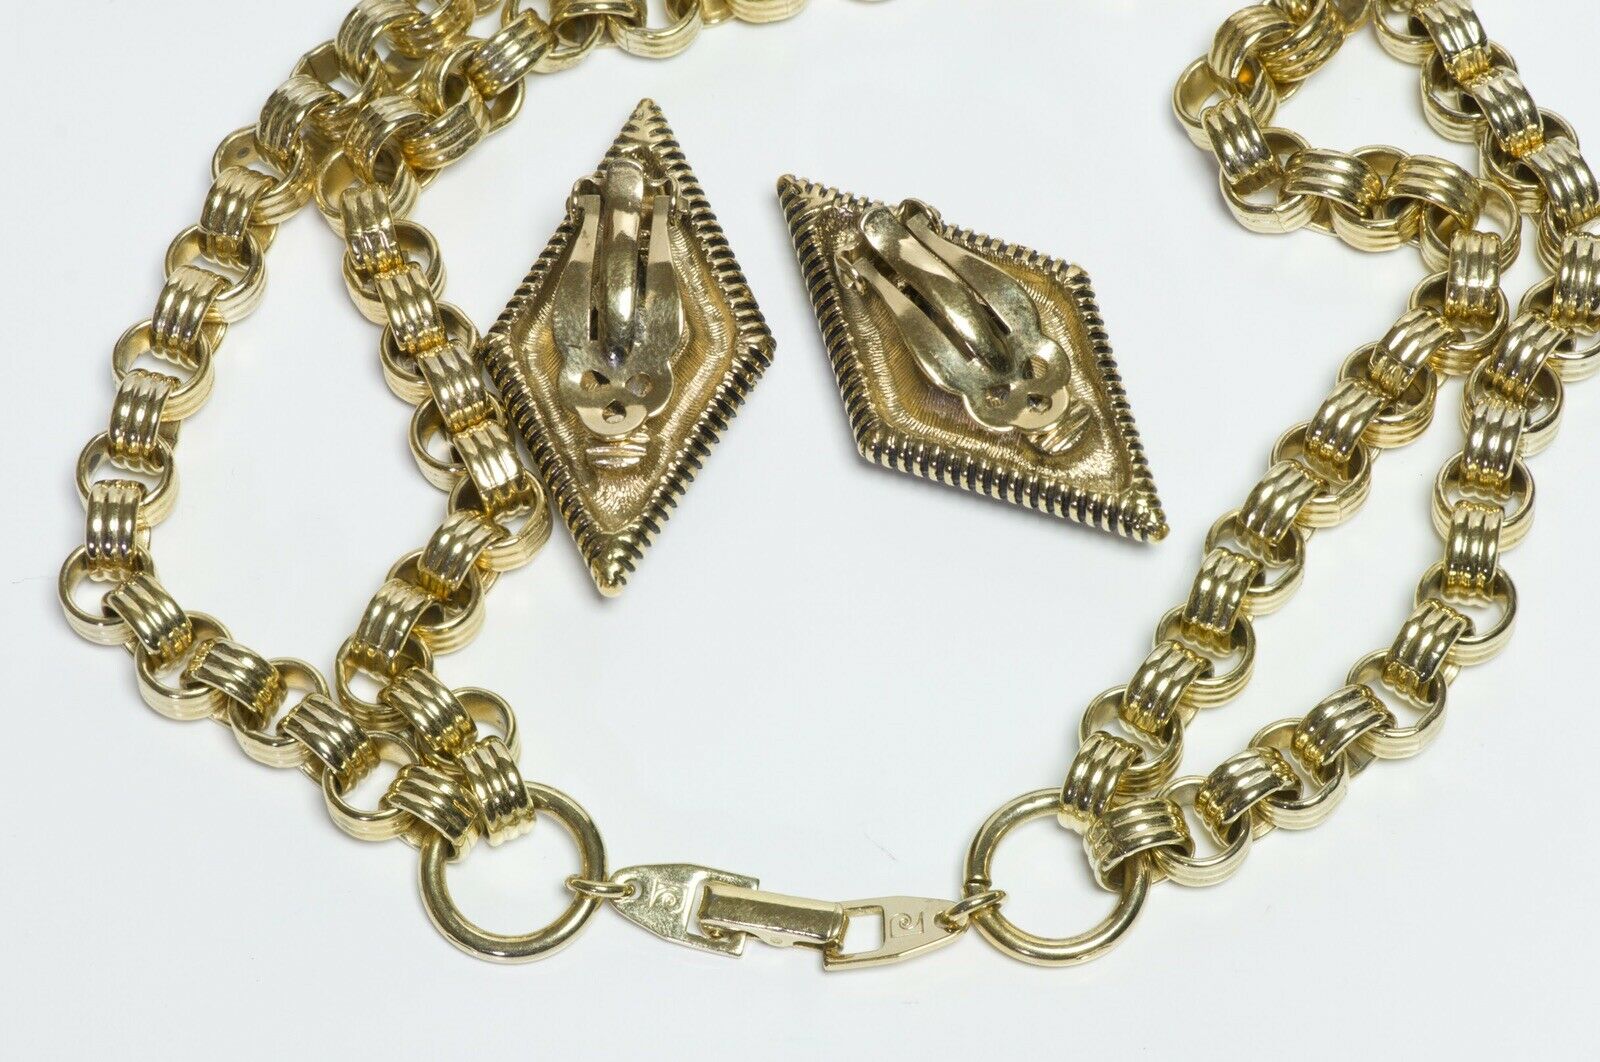 Pierre Cardin 1970’s Chain Geometric Crystal Necklace Earrings Set